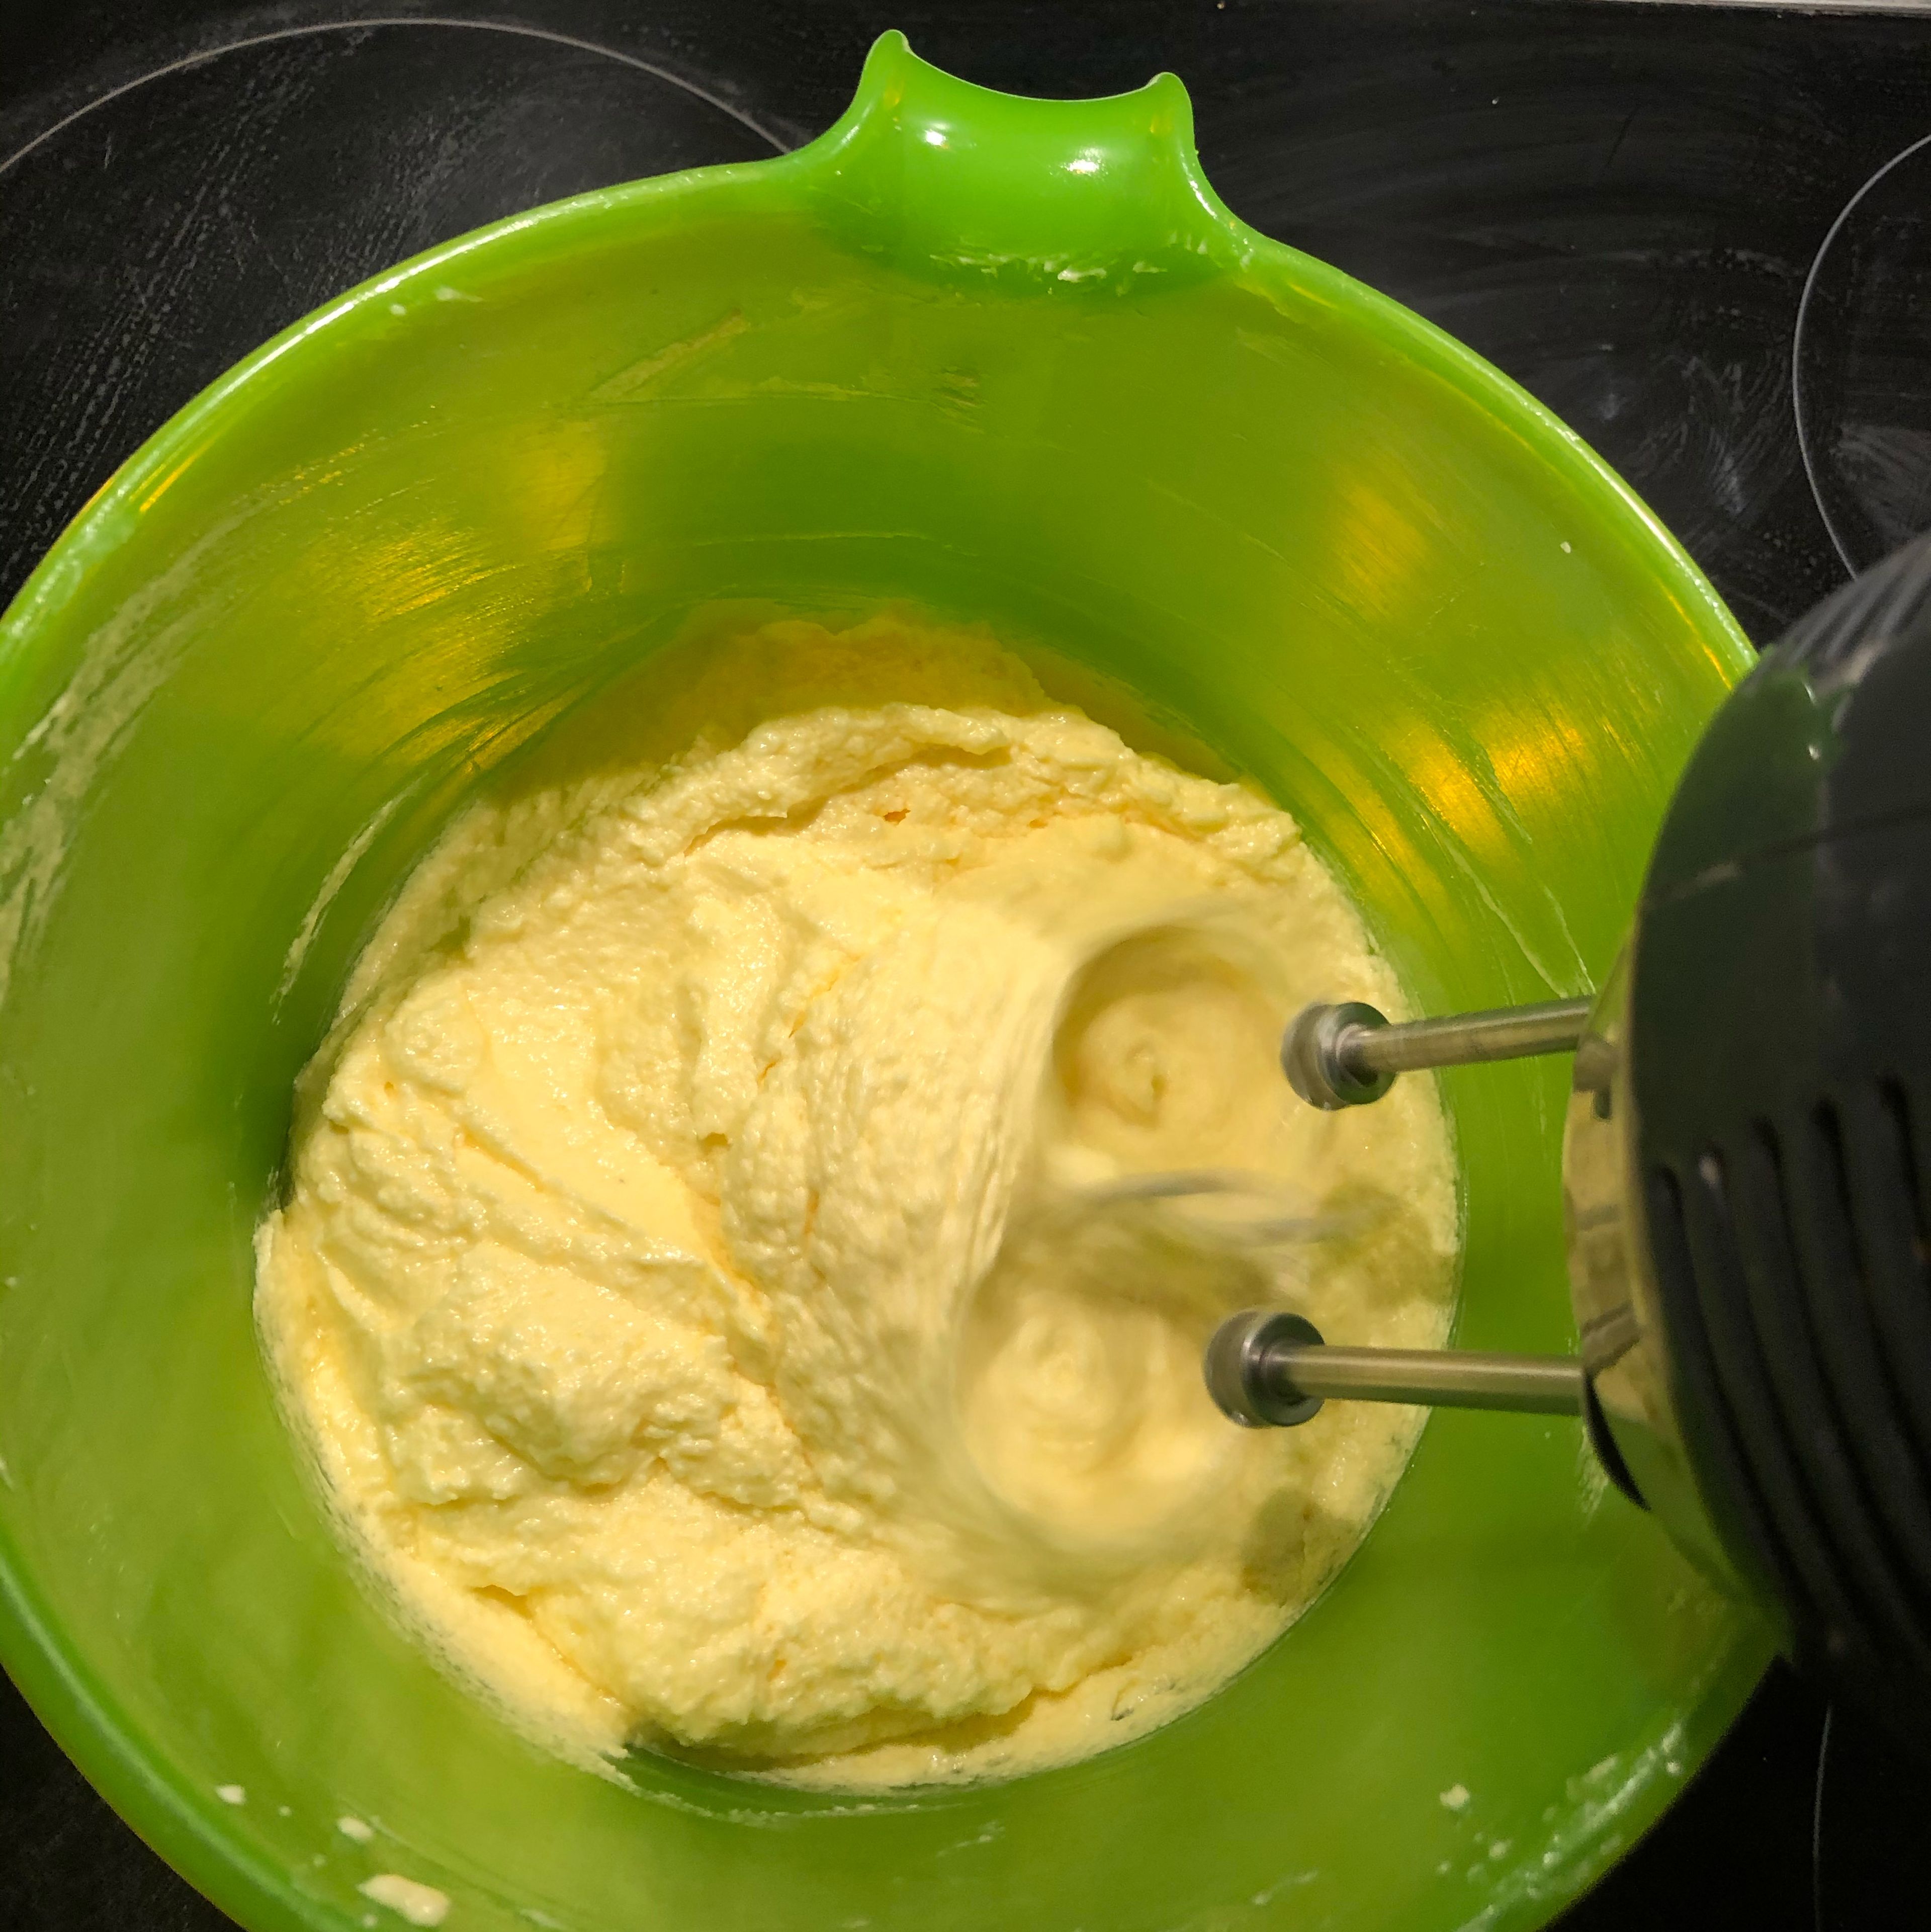 Rührteig zubereiten. Dafür die Butter und den Zucker schaumig schlagen. Die Eier nach und nach hinzufügen und pro Ei ca. 1 Minute mixen. Backofen auf 165 Grad vorheizen.